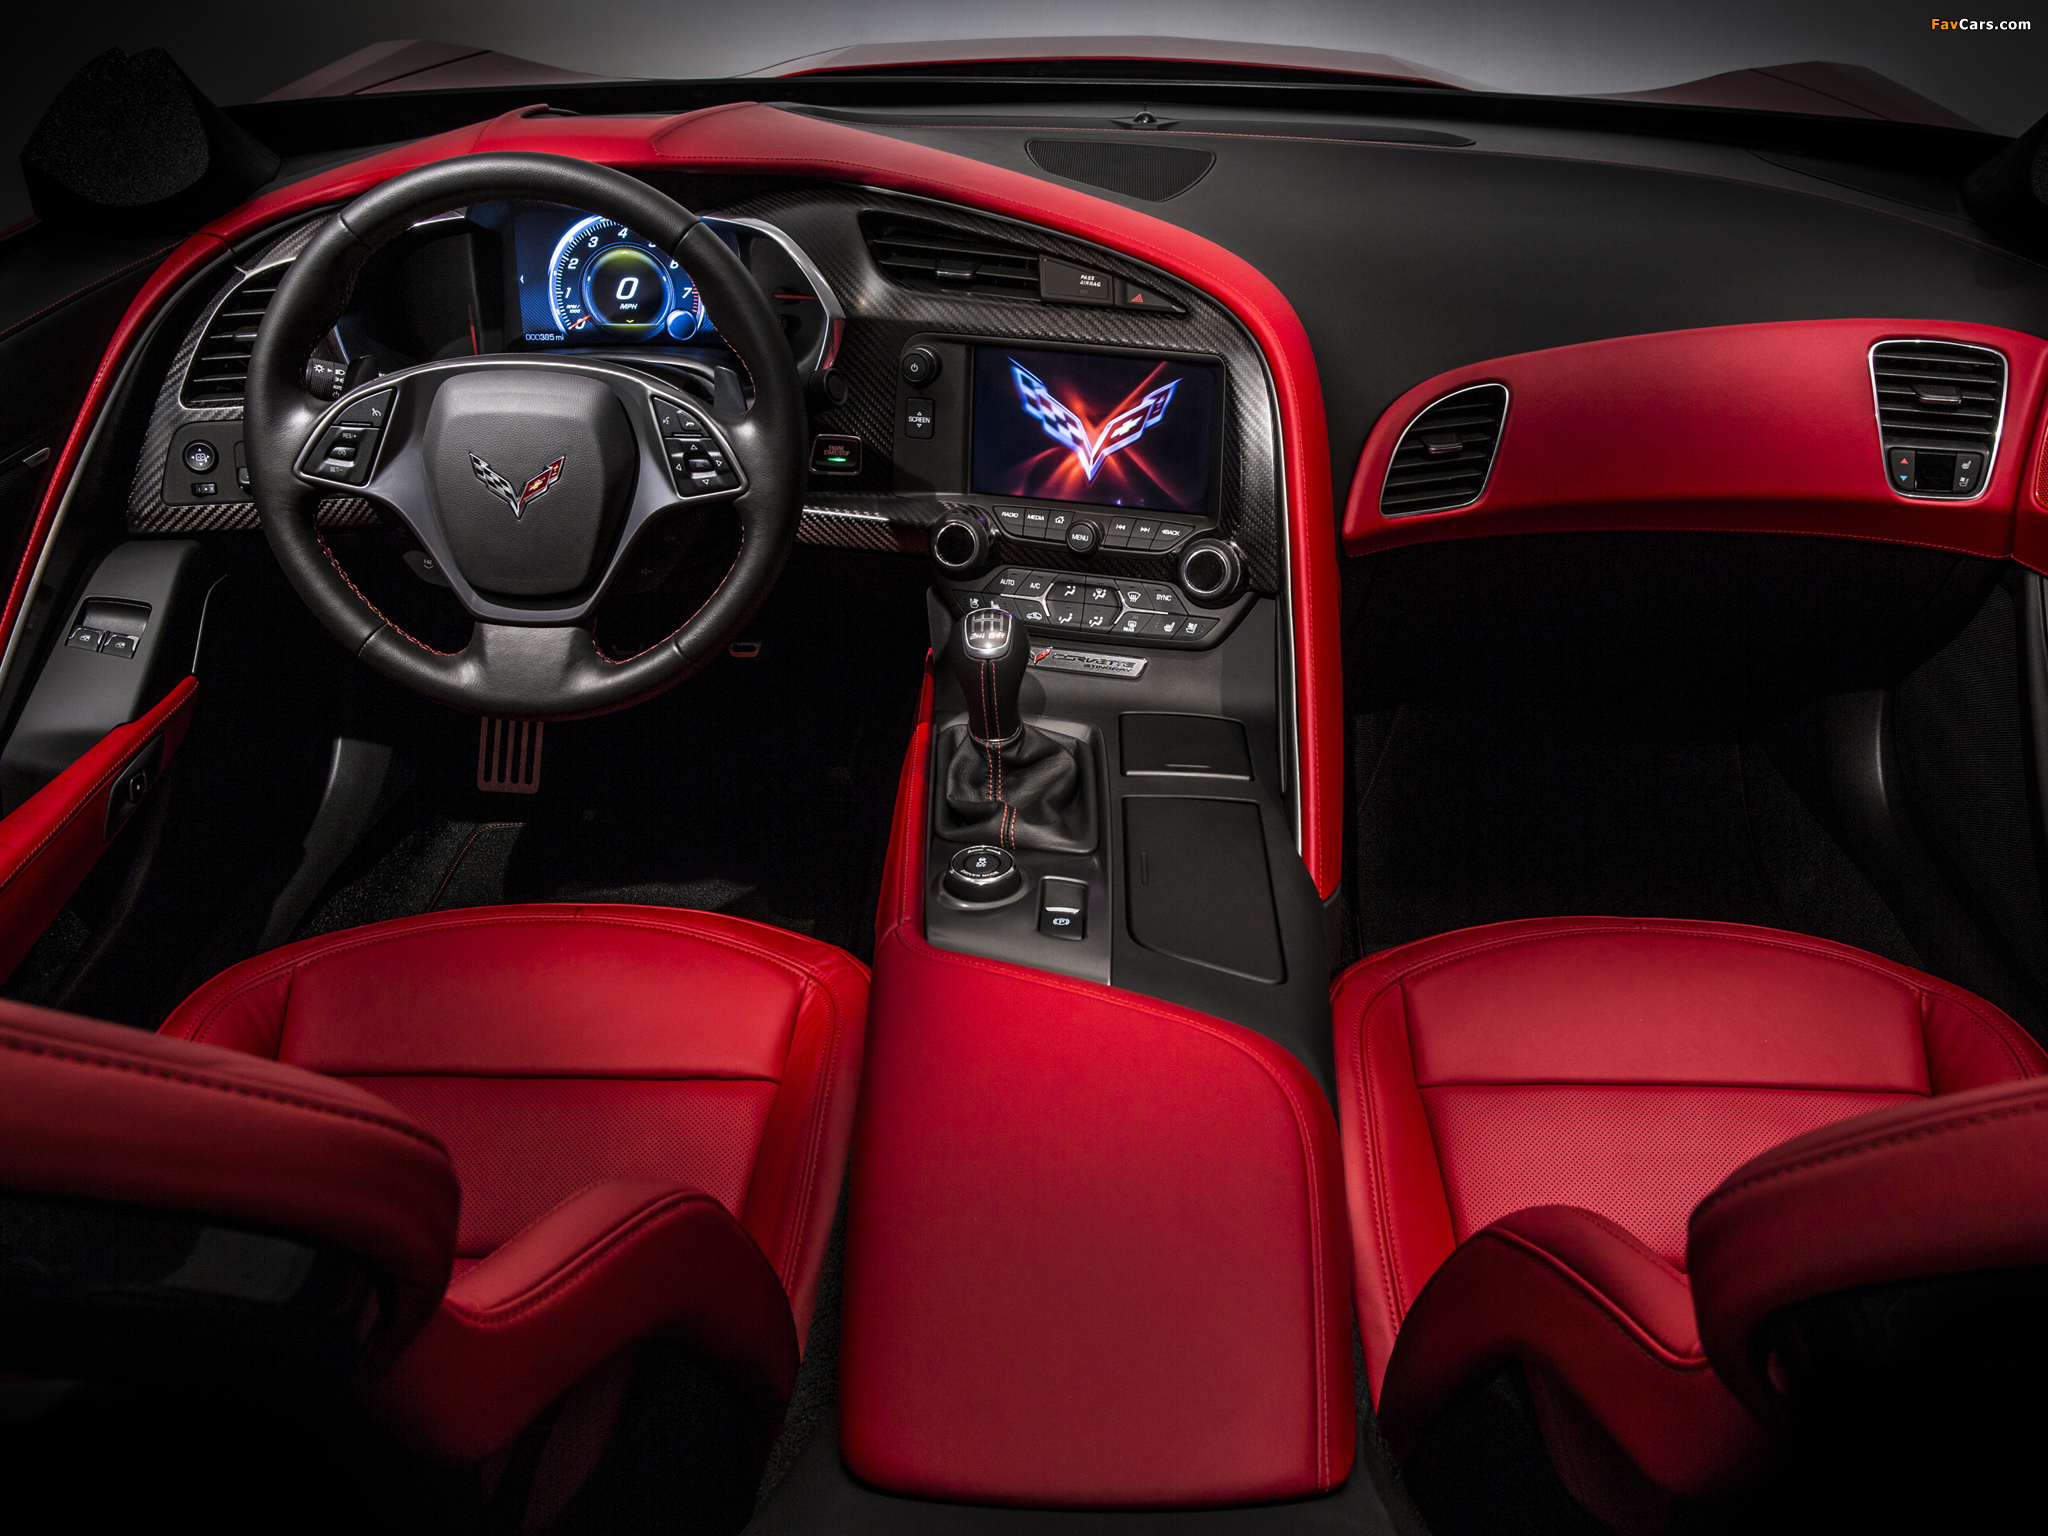 Cars inside. Chevrolet Corvette Stingray 2014. Chevrolet Corvette c7 2014. Chevrolet Corvette c7 салон. Chevrolet Corvette c8 салон.